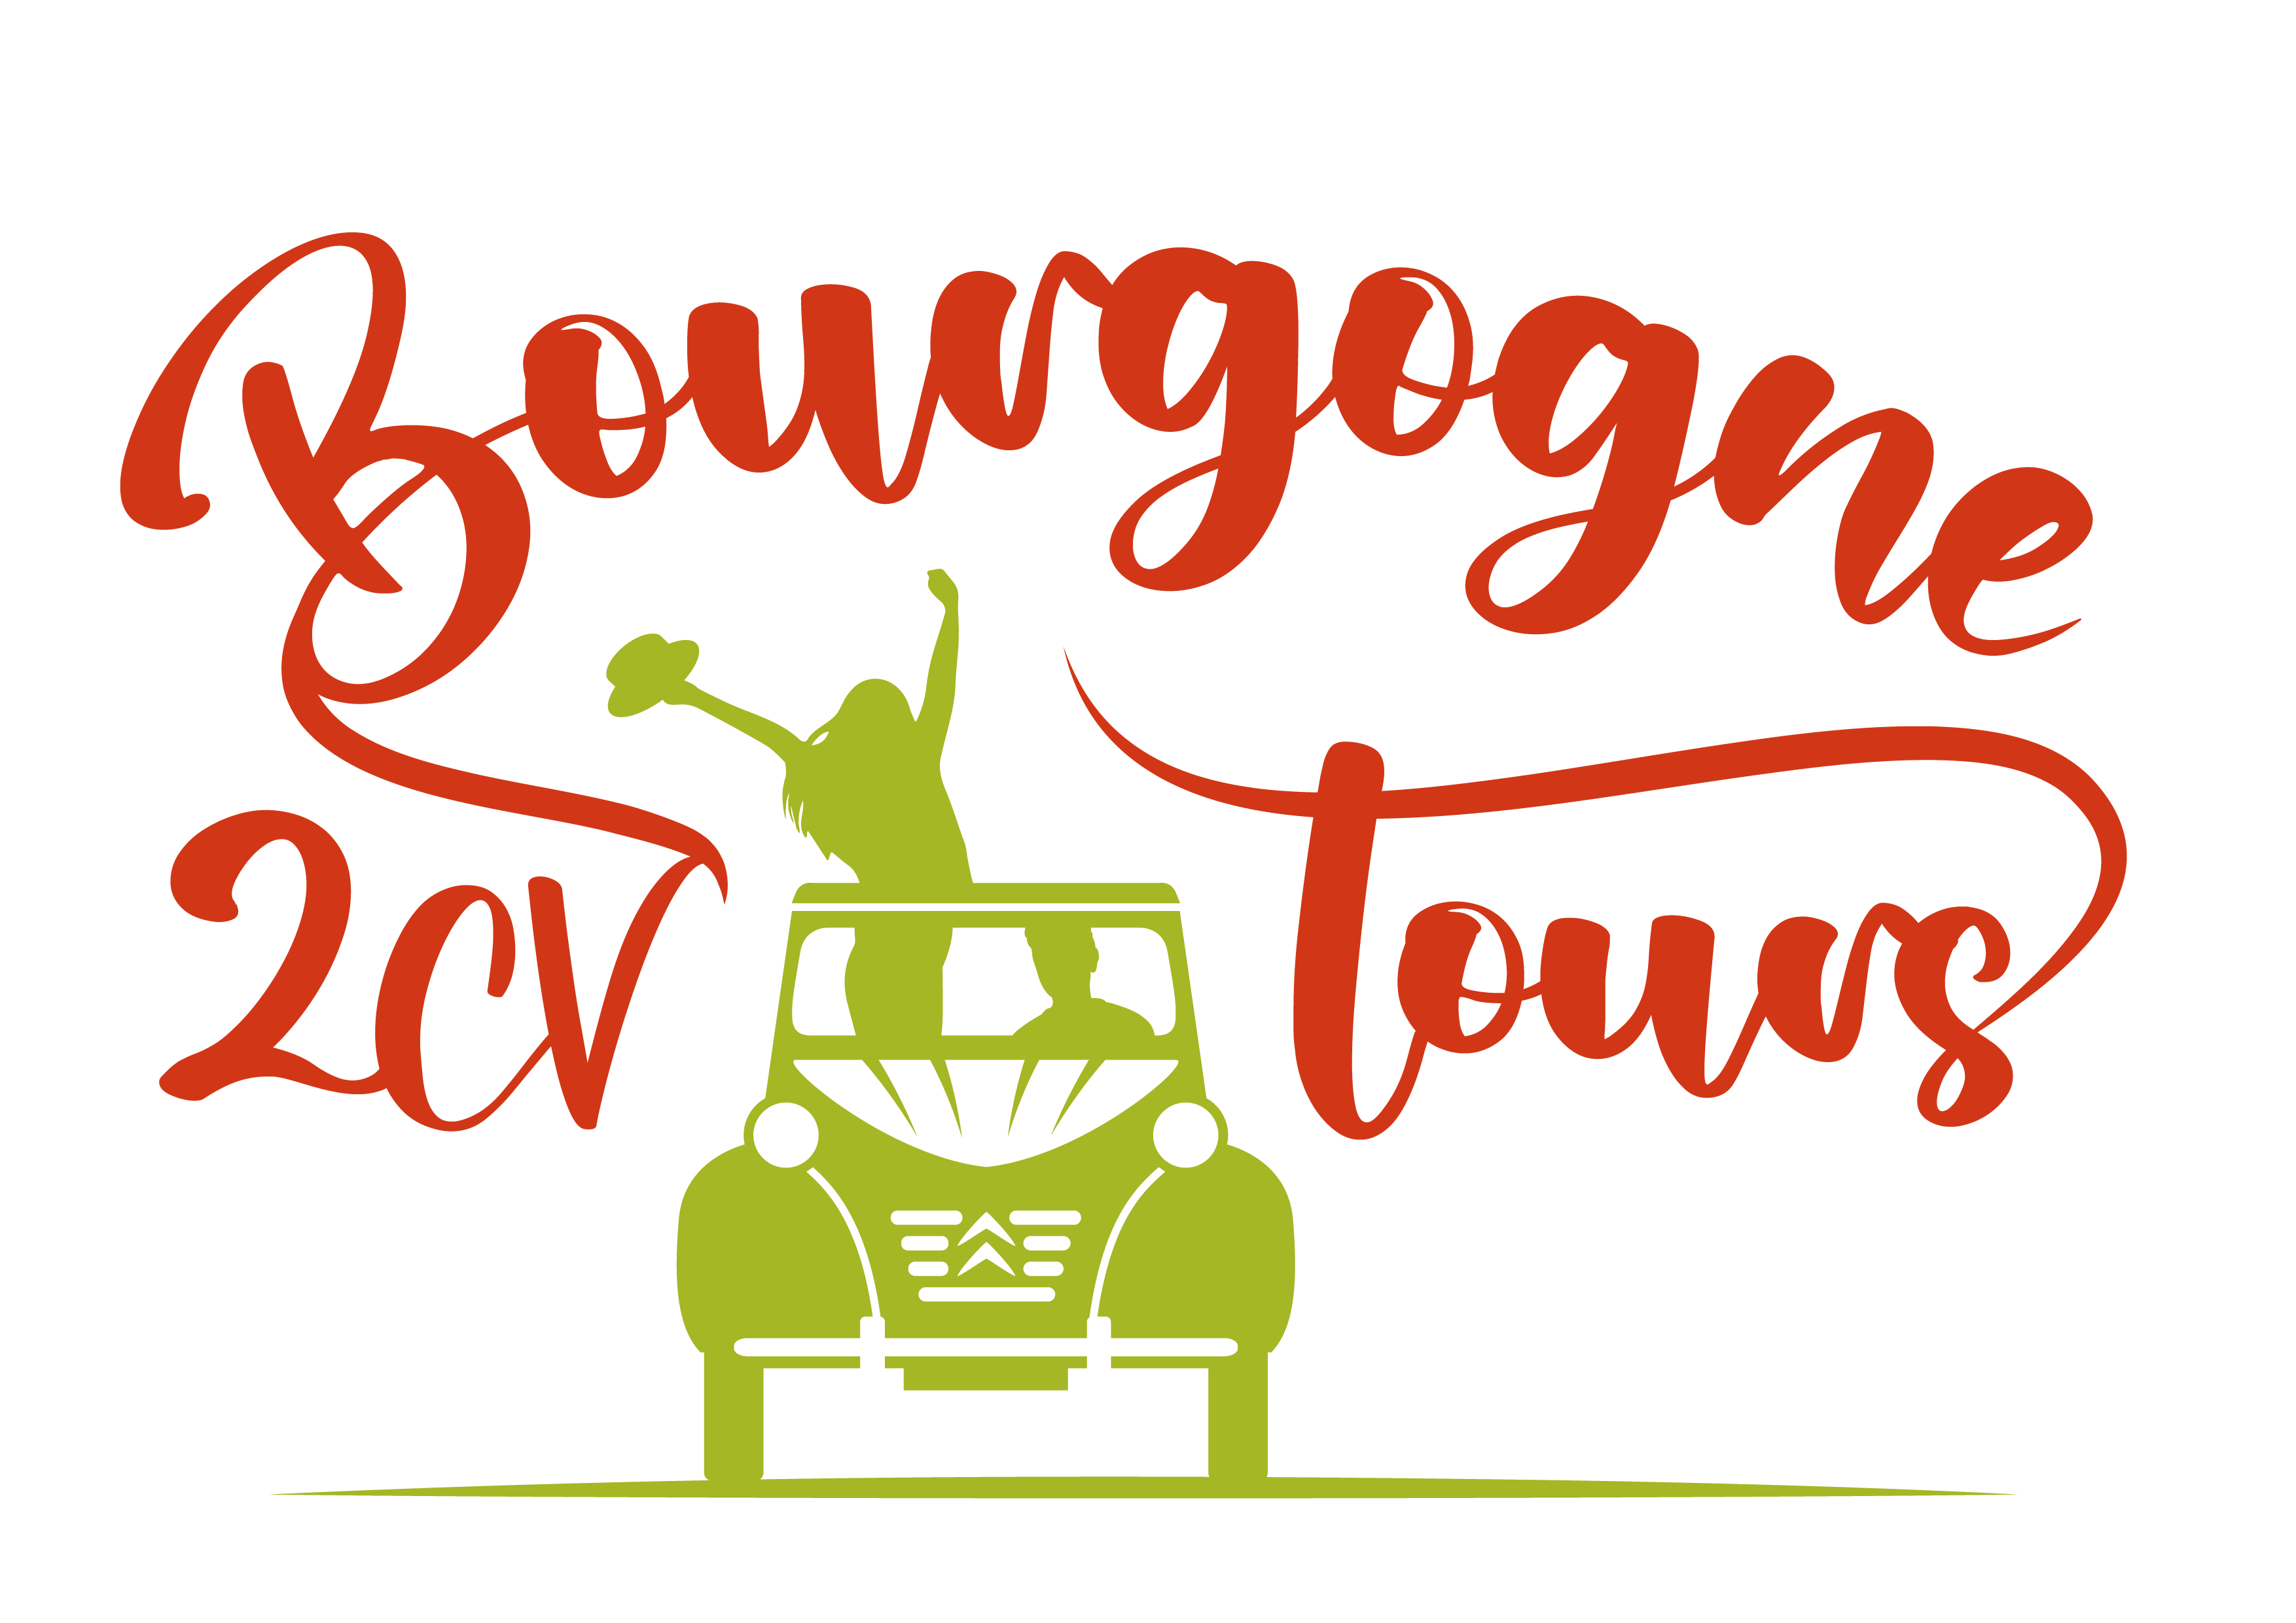 2 CV Bourgogne Tours